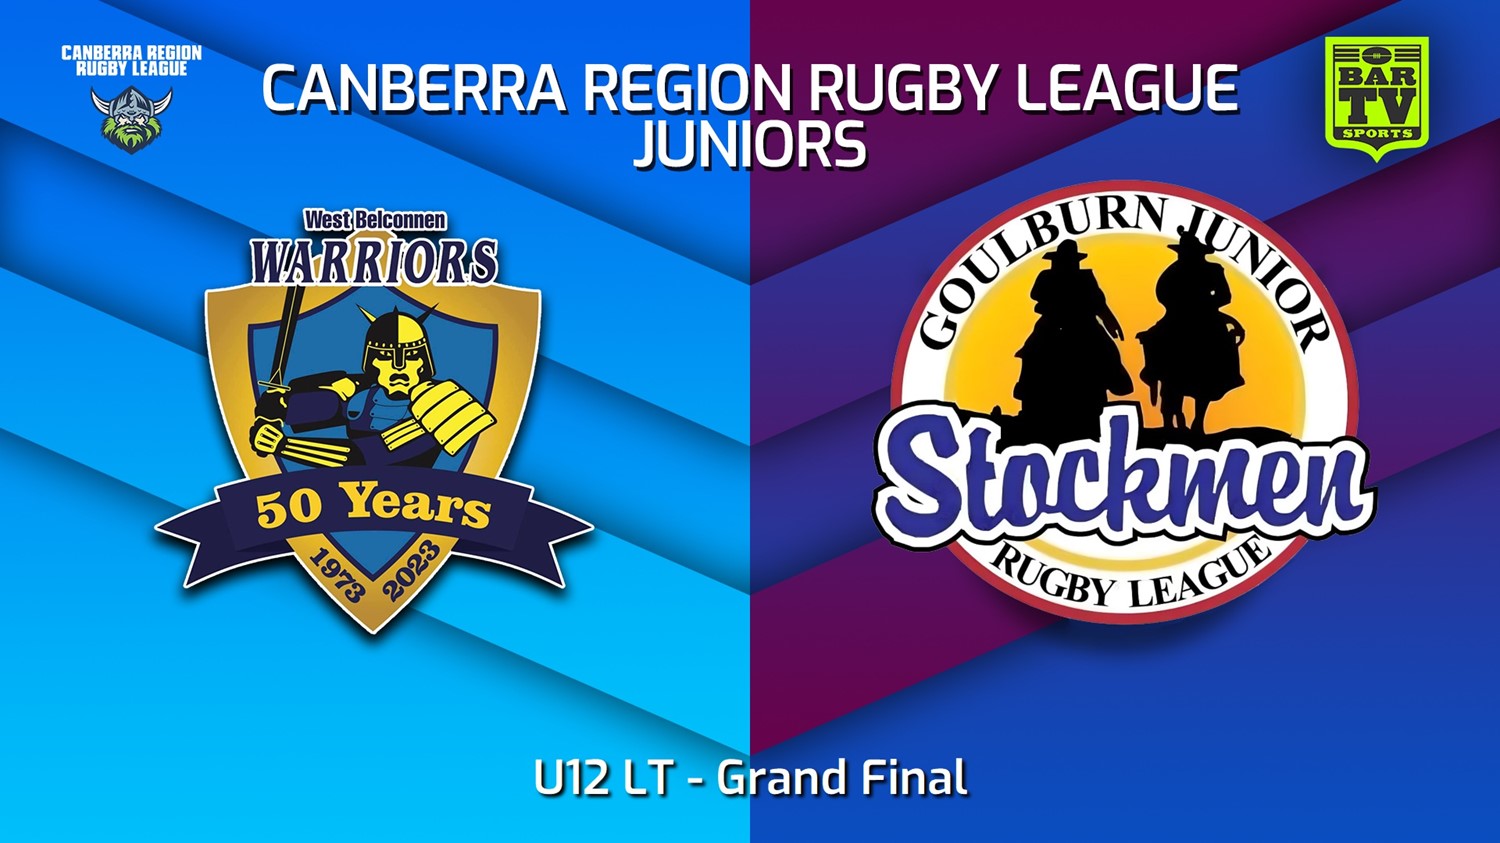 230909-2023 Canberra Region Rugby League Juniors Grand Final - U12 LT - West Belconnen Warriors Juniors v Goulburn Junior Stockmen Slate Image